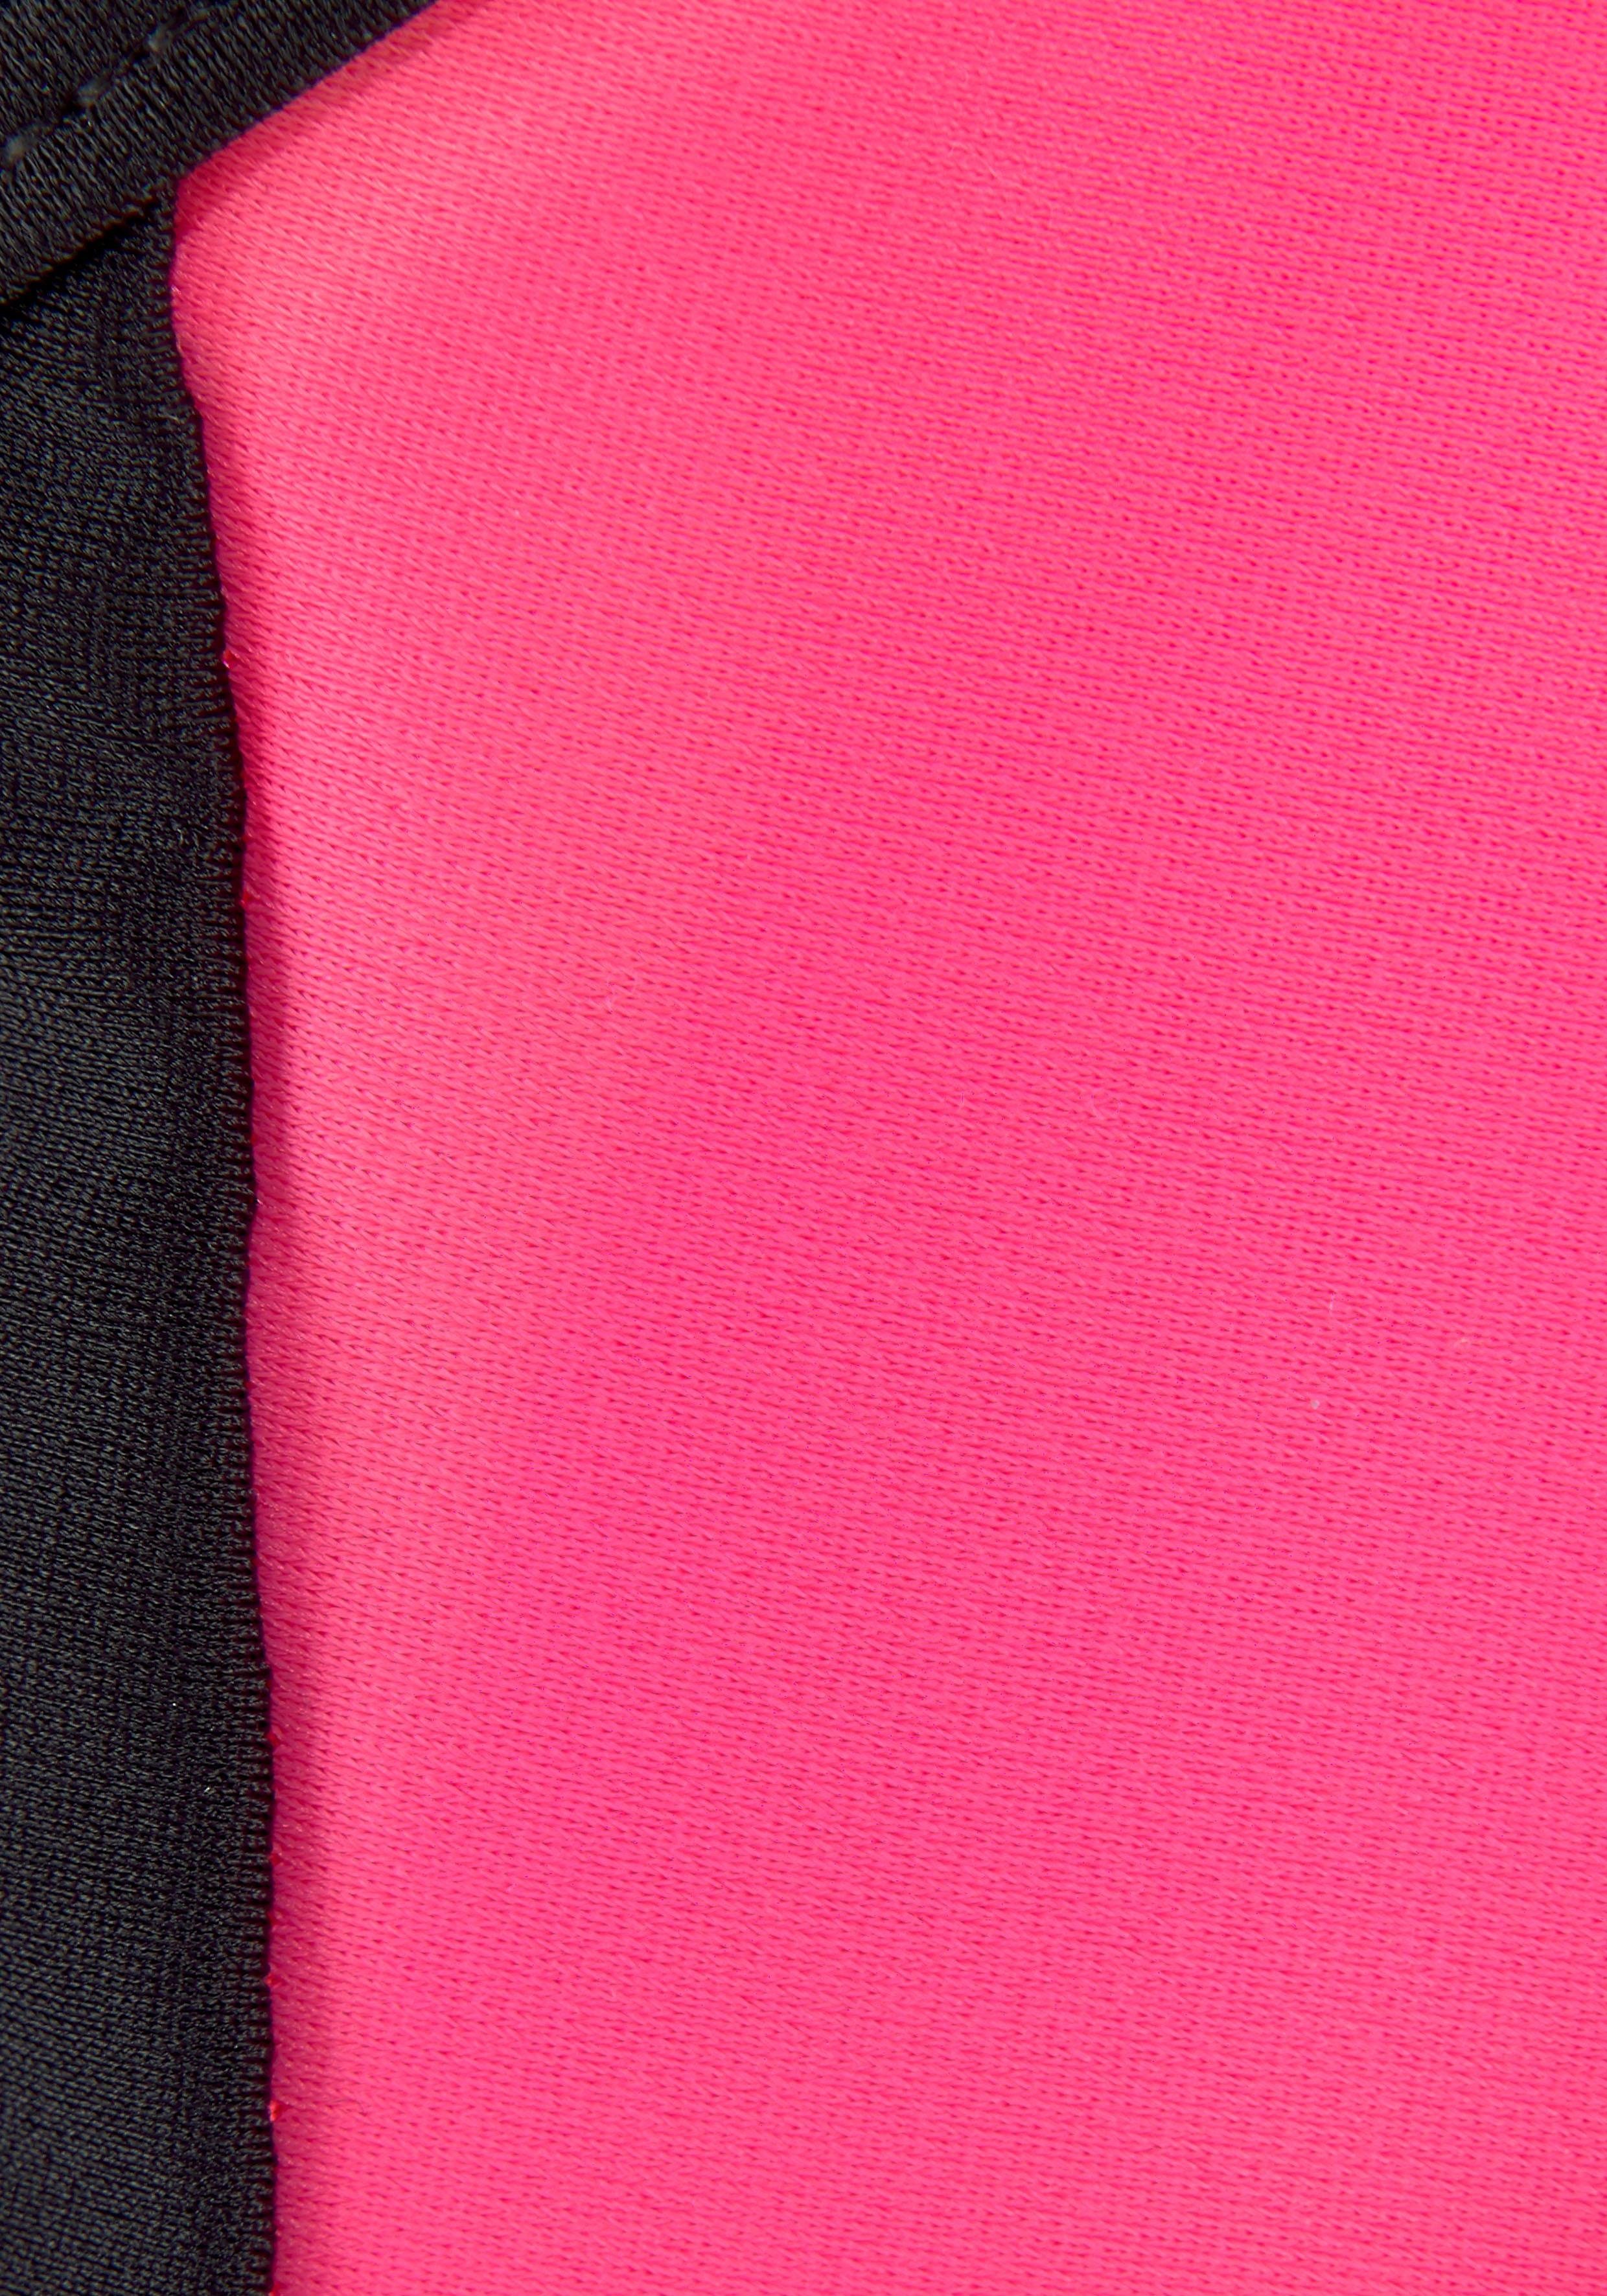 Bustier-Bikini gekreuzten mit Trägern pink-schwarz Bench.